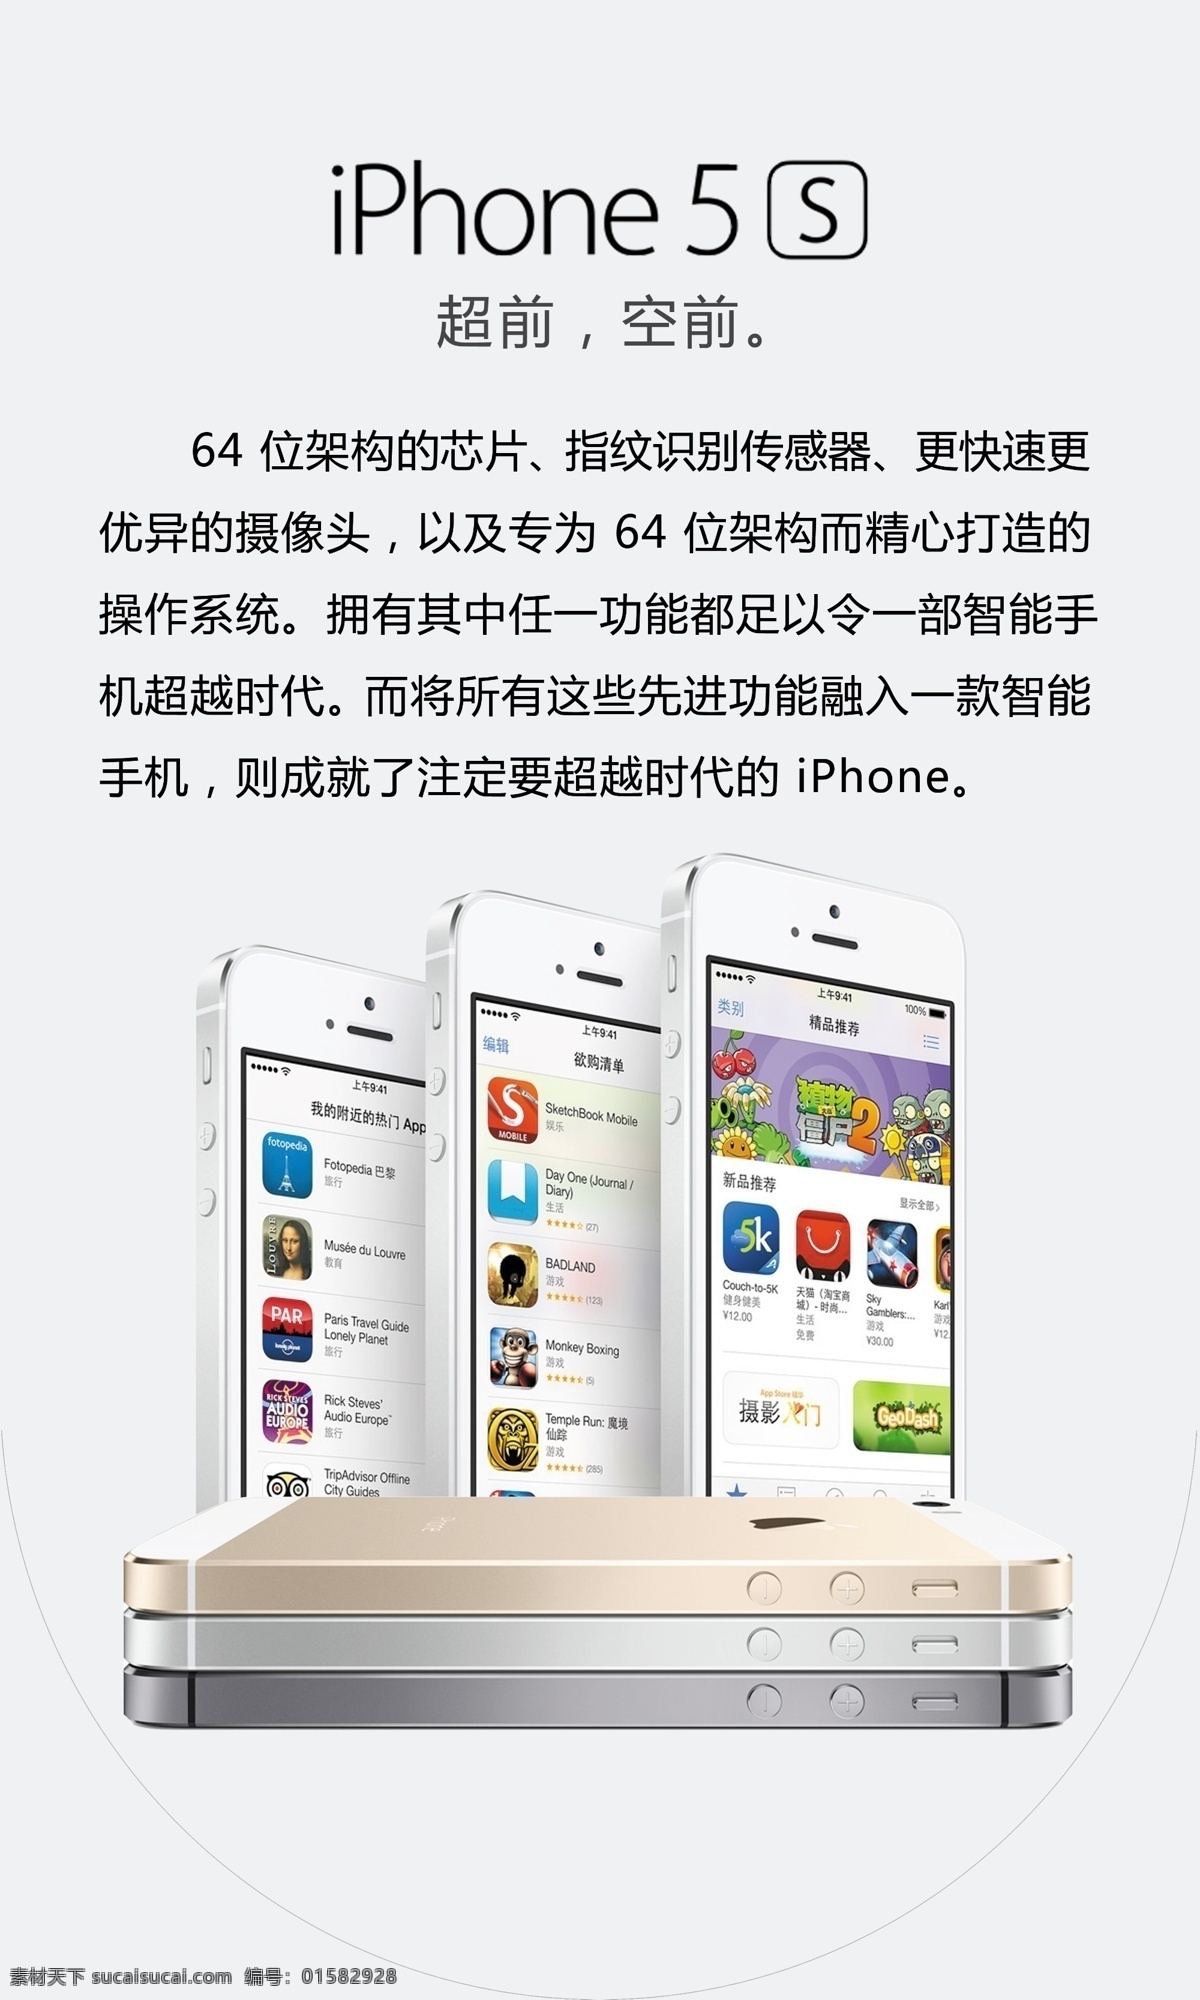 苹果5s iphone5s 苹果 苹果手机 5s iphone 广告 超前 空前 5s系列 广告设计模板 源文件 白色